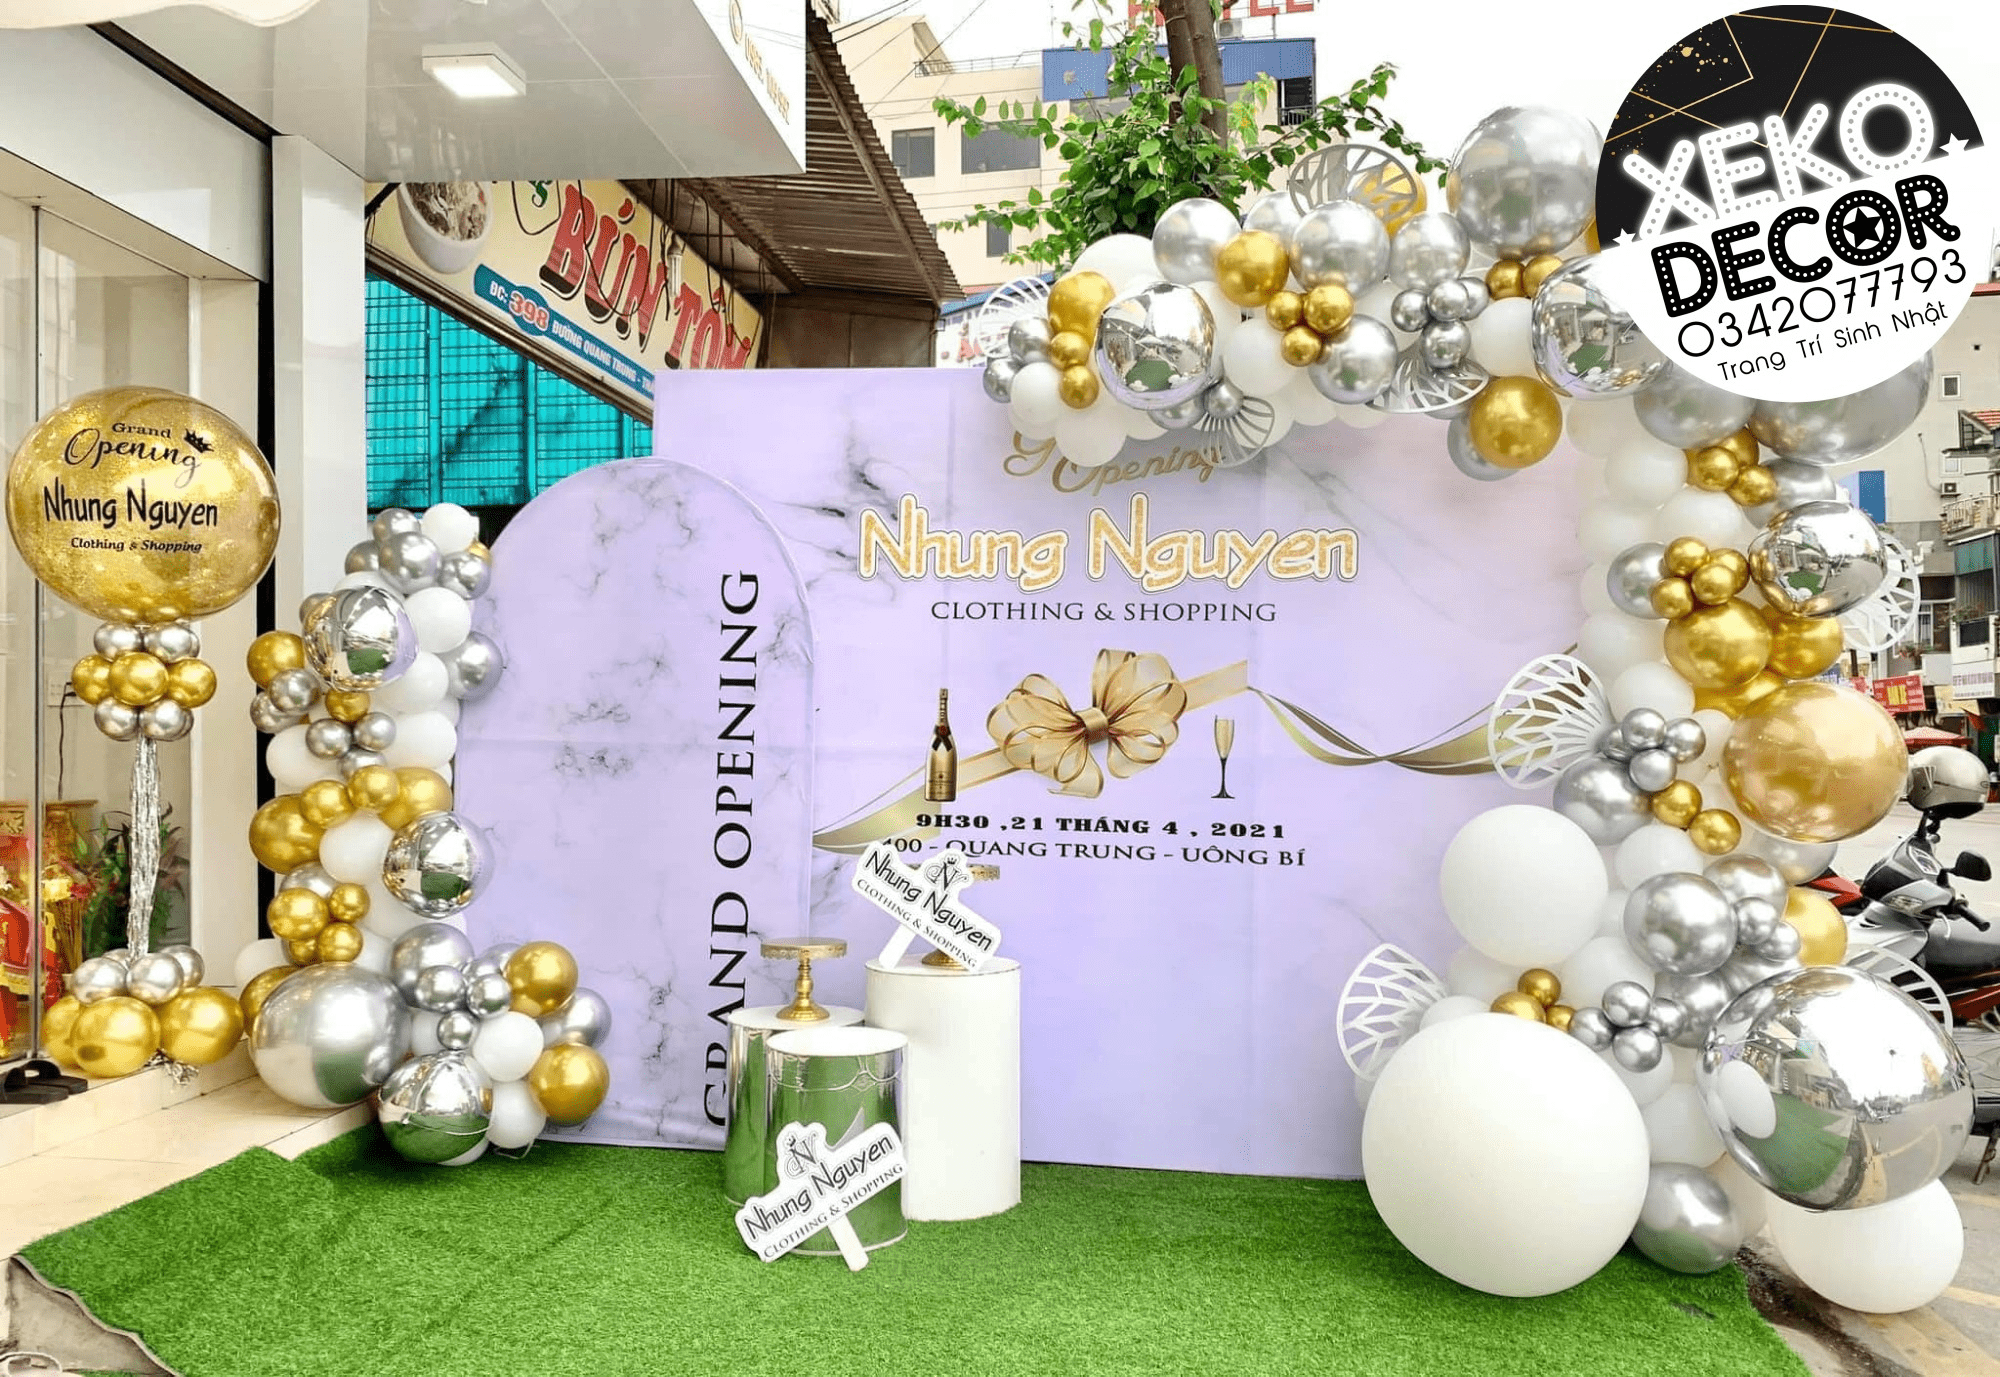 Happy Party  Chuyên cung cấp đồ phụ kiện trang trí sinh nhật trẻ em uy tín  tại TPHCM  Thông tin về các shop đồng hồ đẹp uy tín